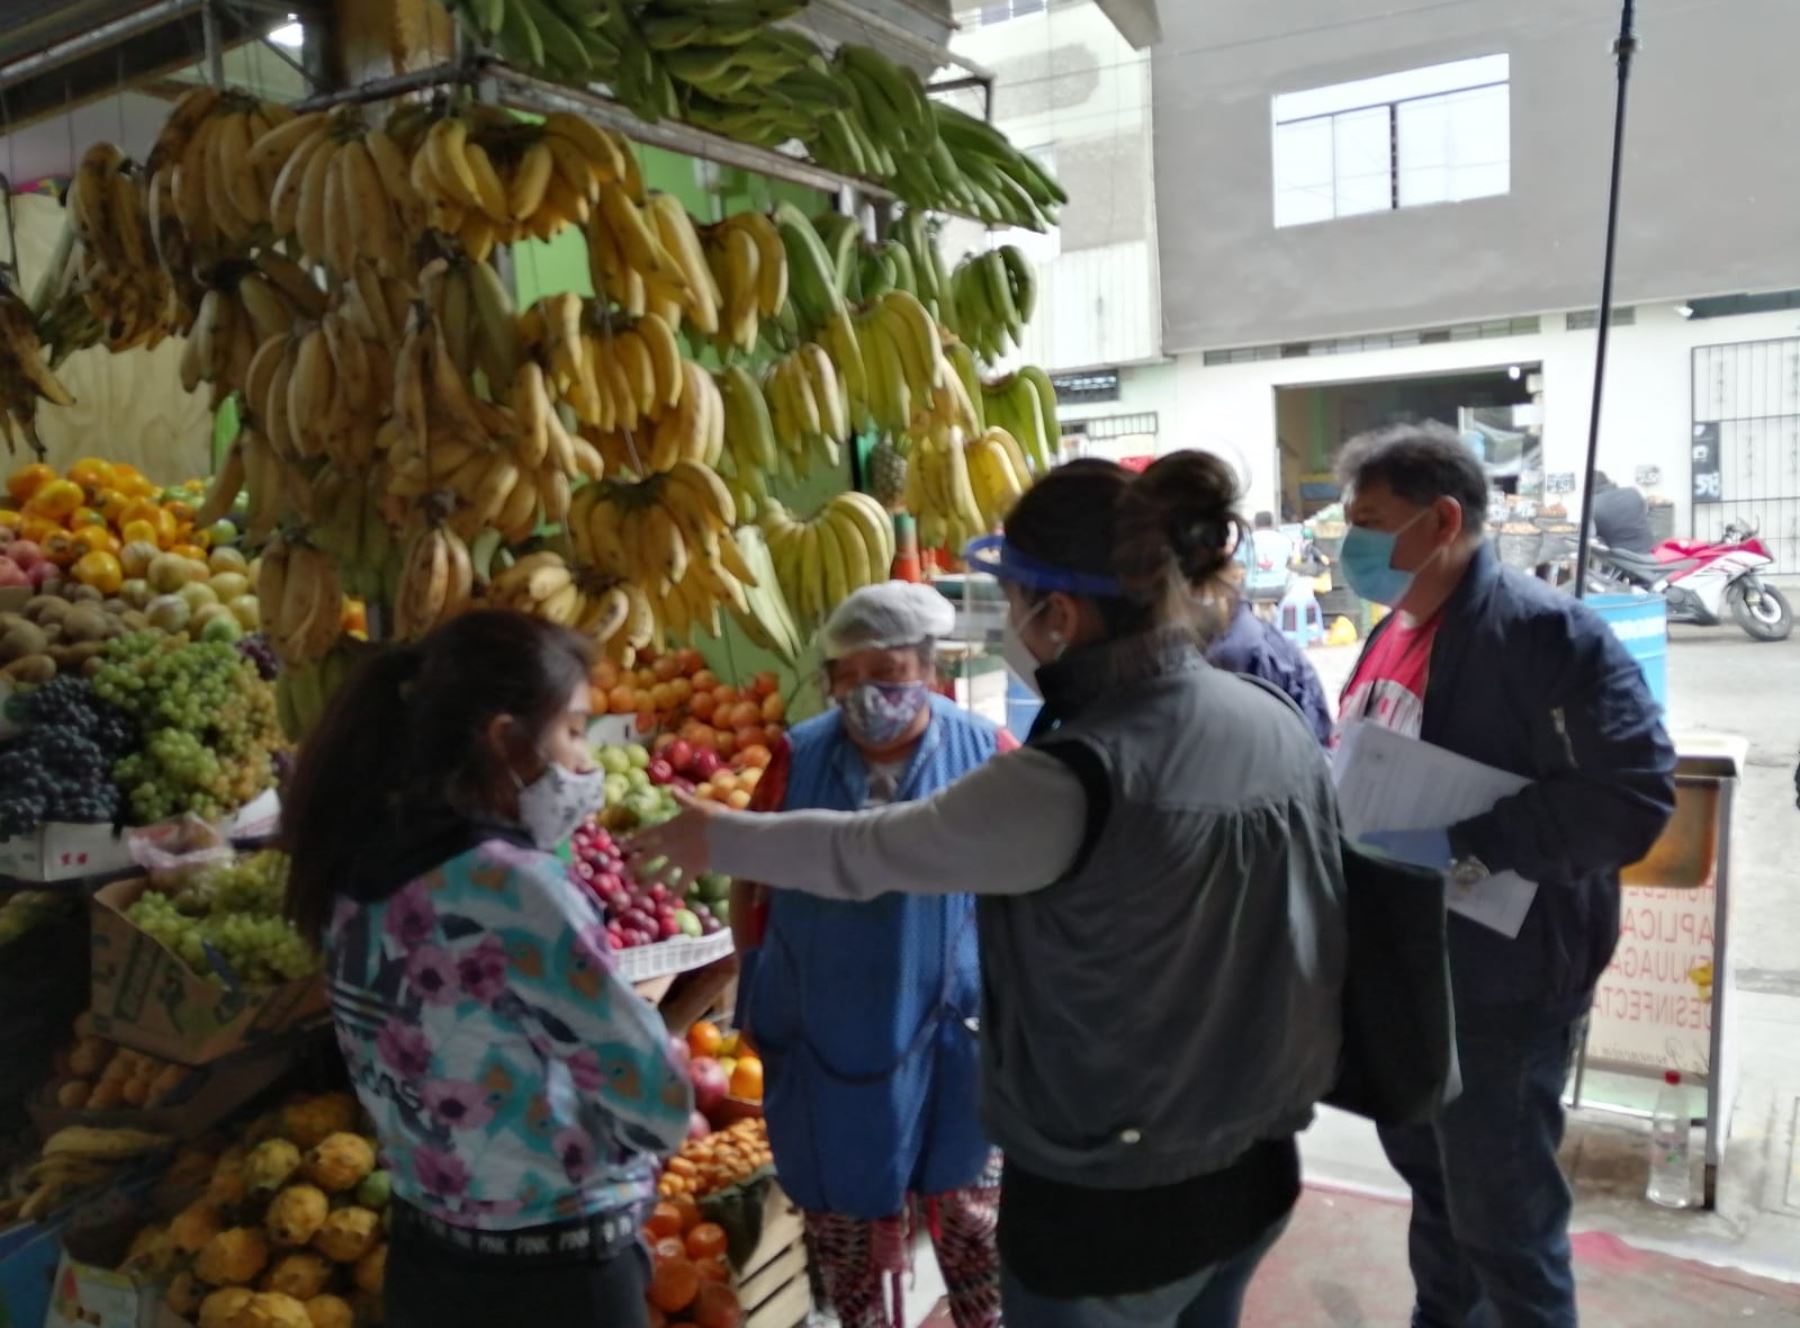 Los mercados de la ciudad de Trujillo no atenderán los domingos para ejecutar labores de desinfección de los locales y reducir el riesgo de contagio, anunció la municipalidad provincial. ANDINA/Difusión